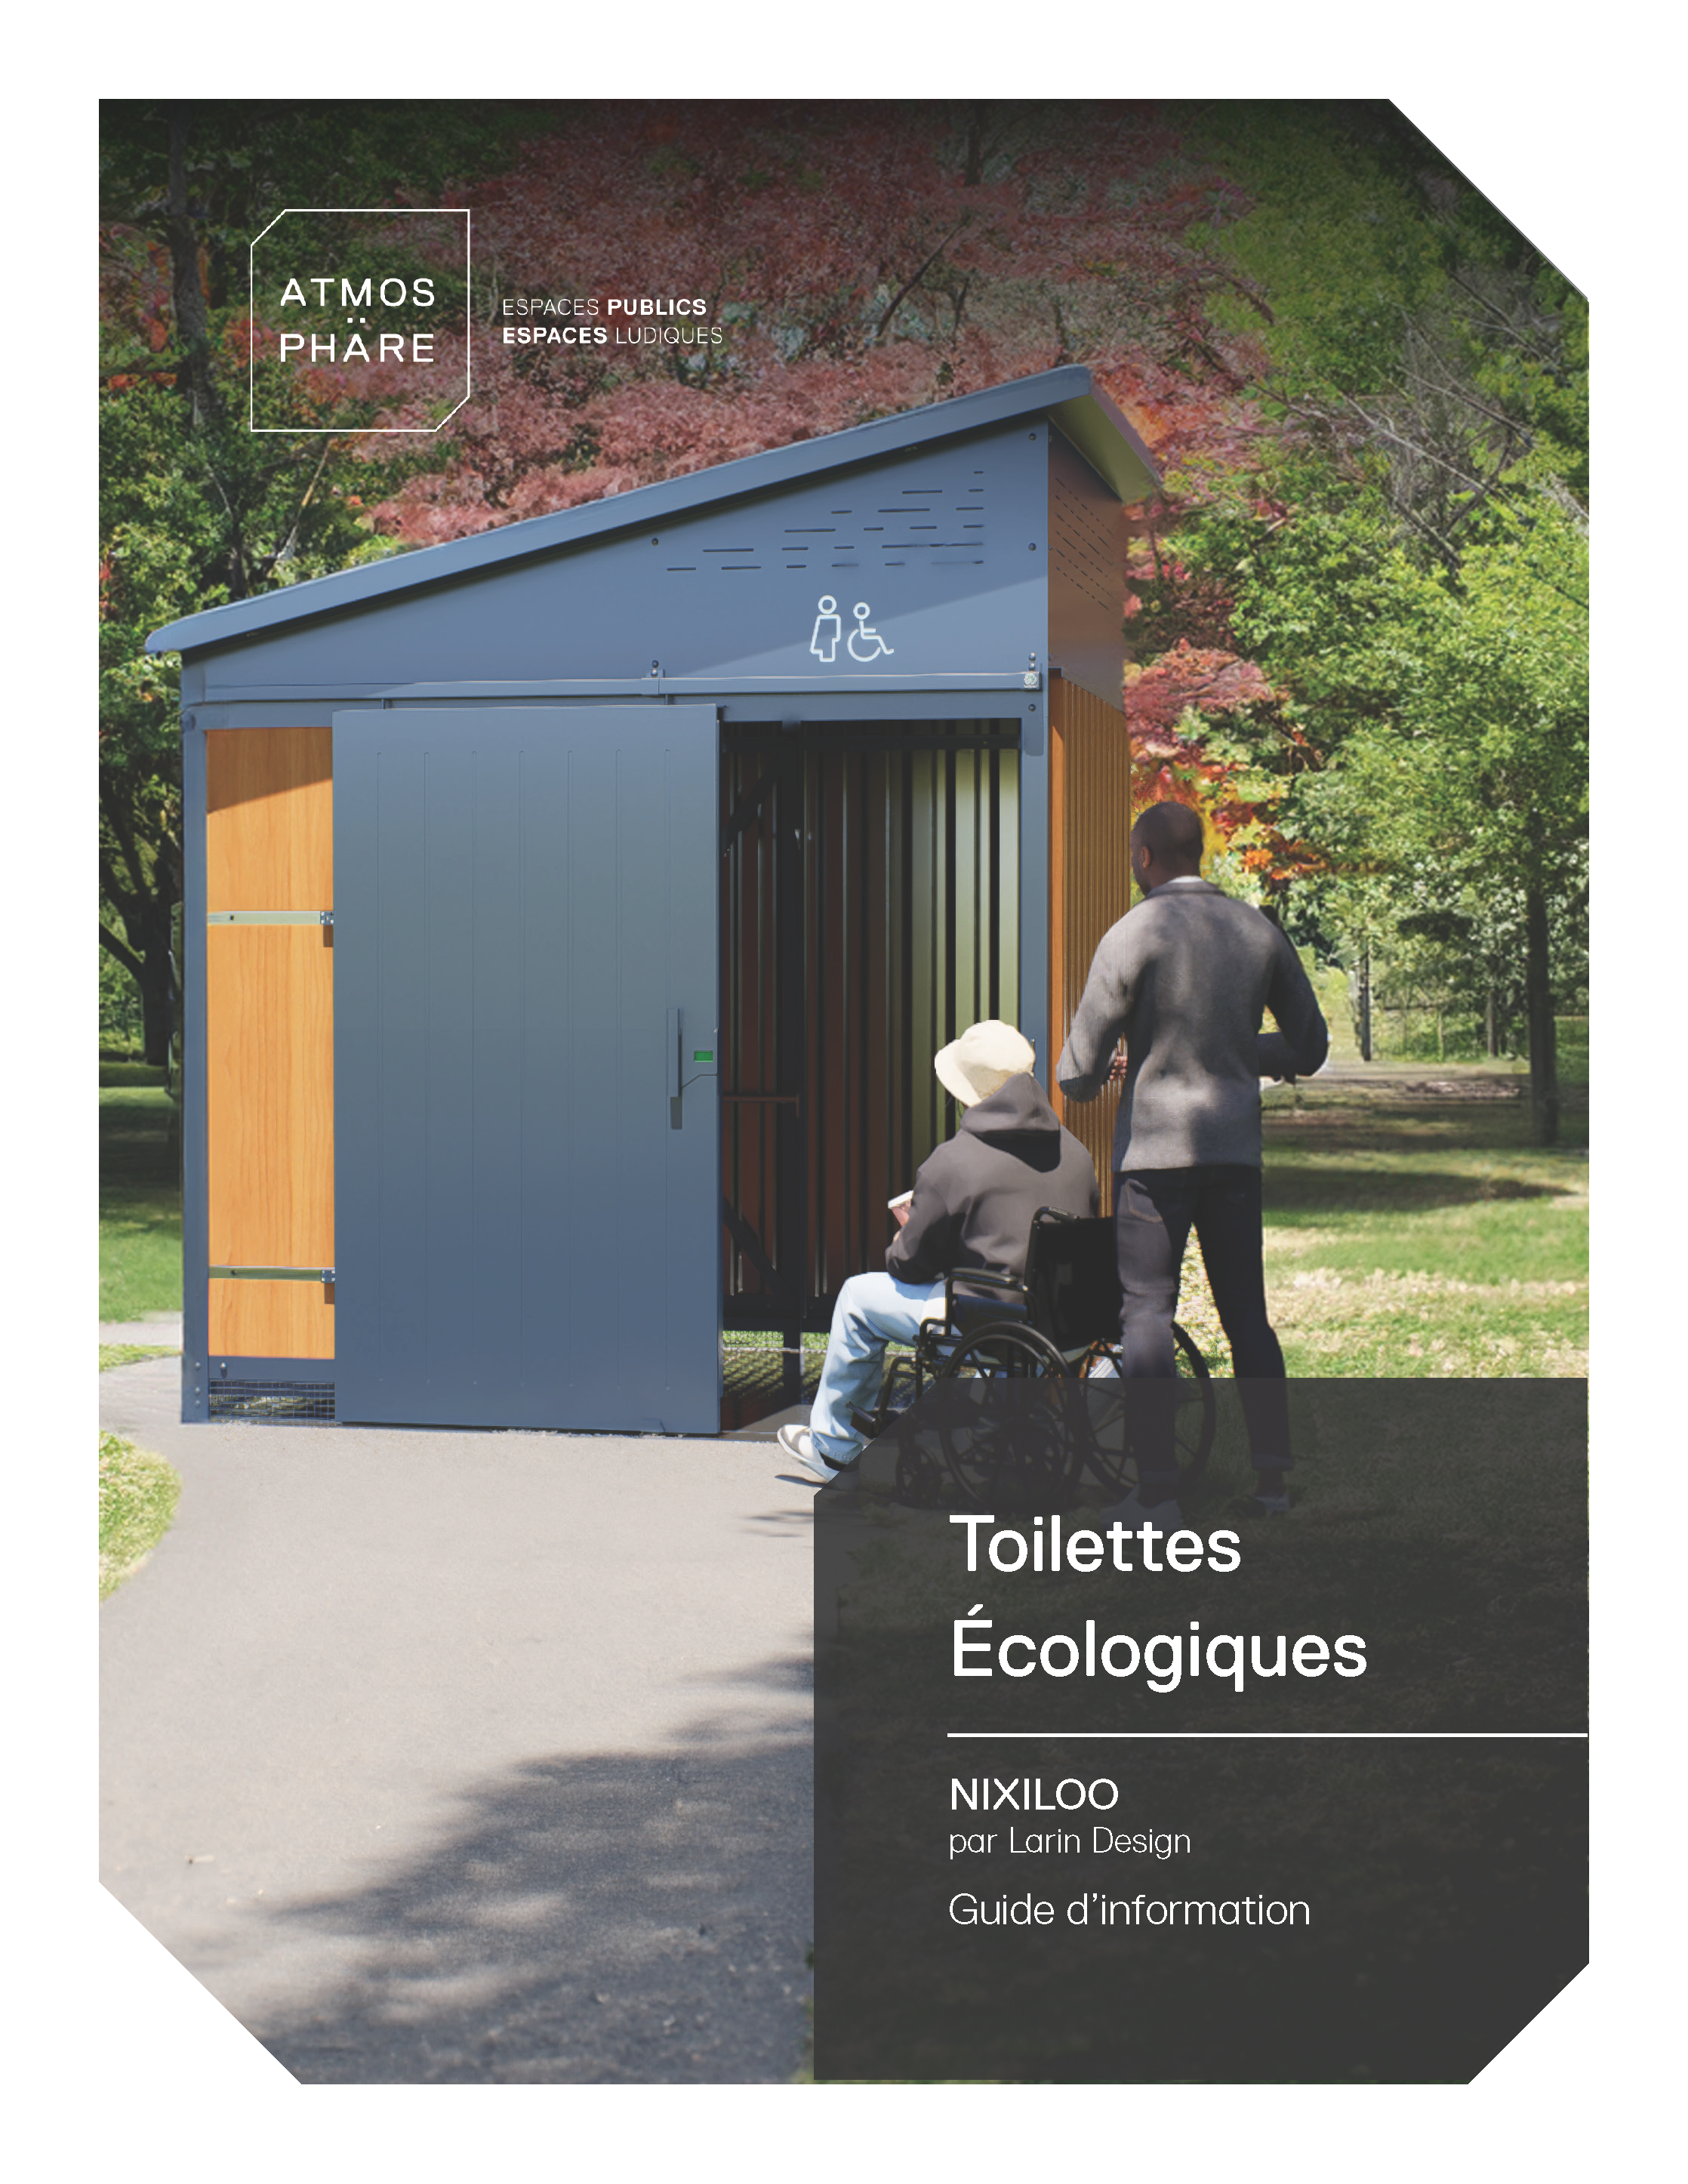 Toilettes écologiques publiques | Nixiloo | Atmosphäre